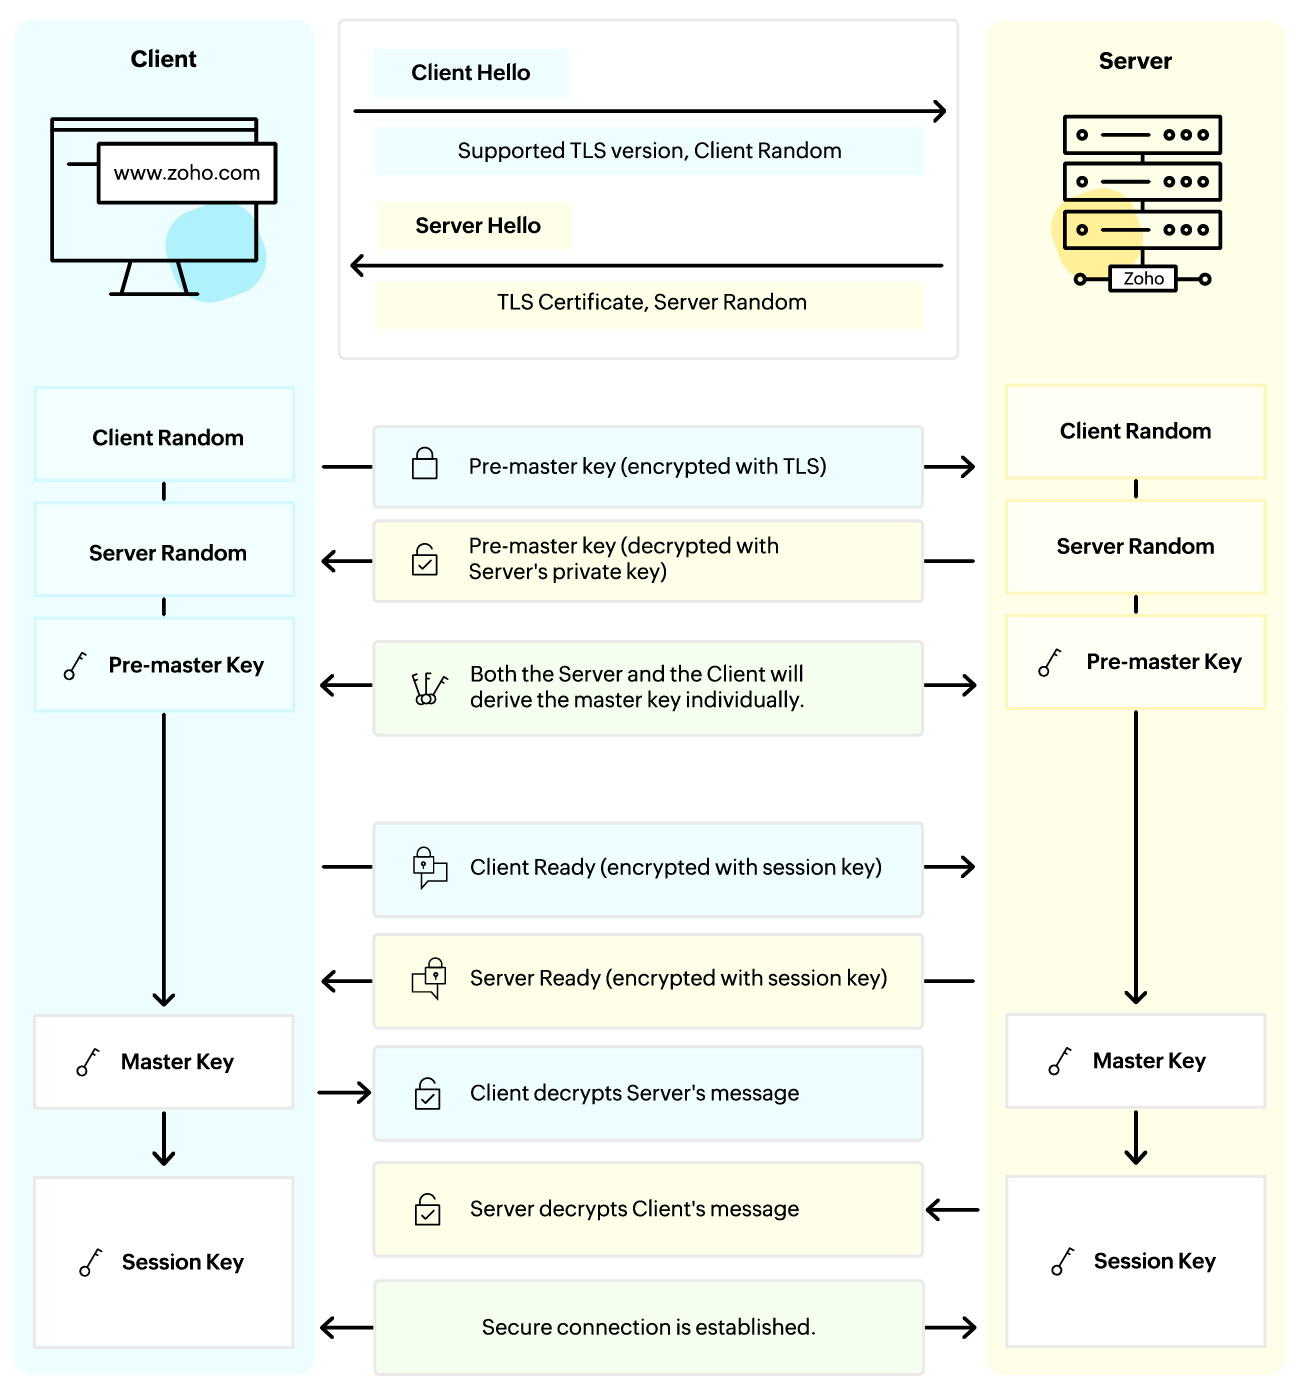 Steps involved in a TLS handshake